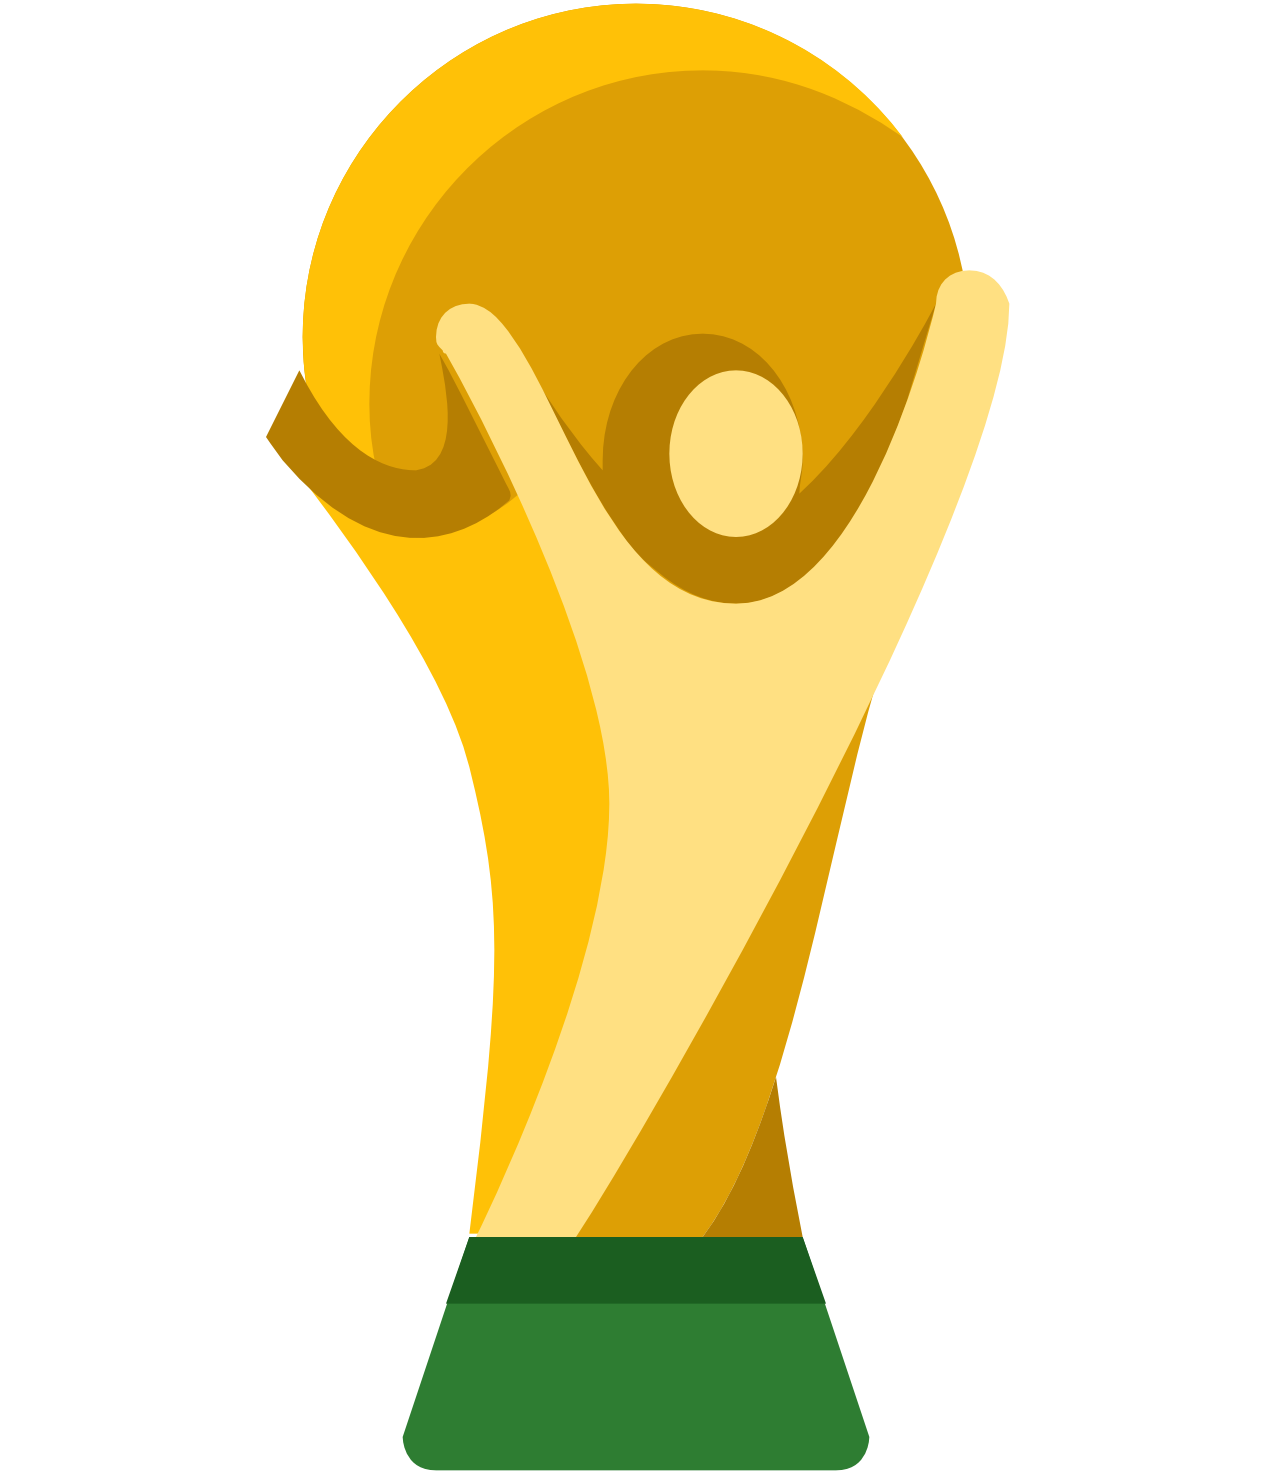 Copa do Mundo - Qualificação América do Sul Logo